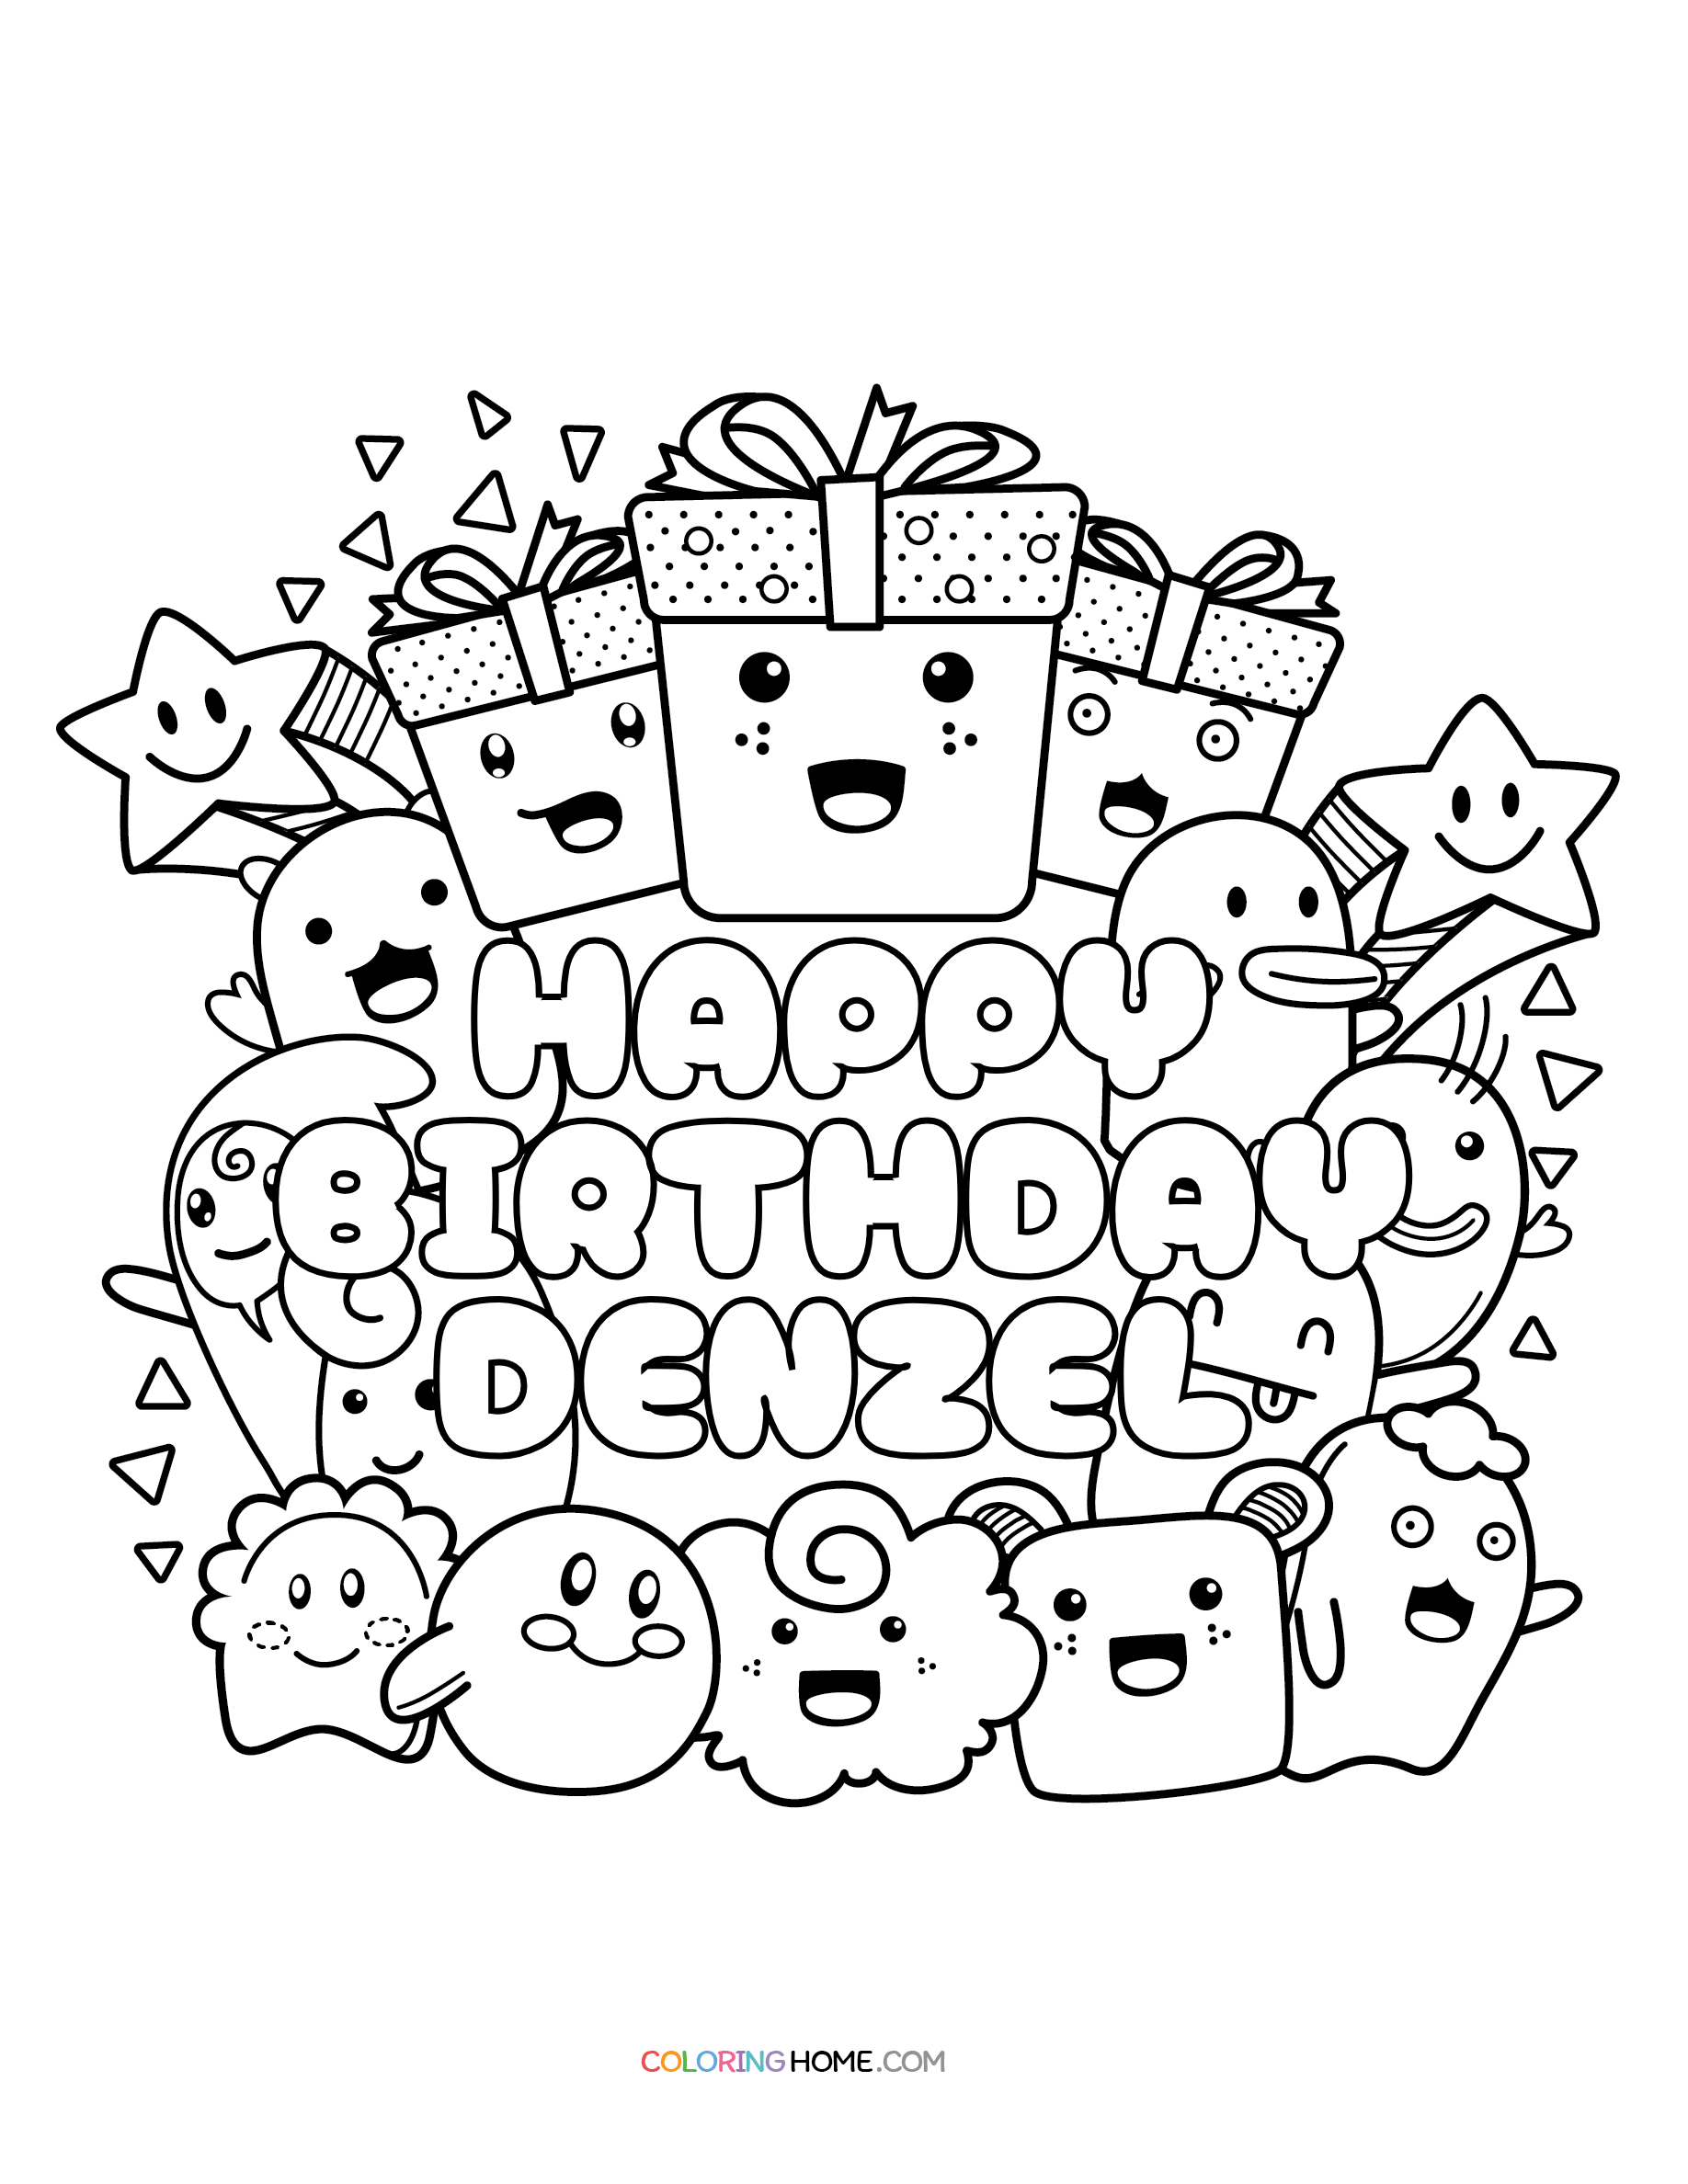 Happy Birthday Denzel coloring page